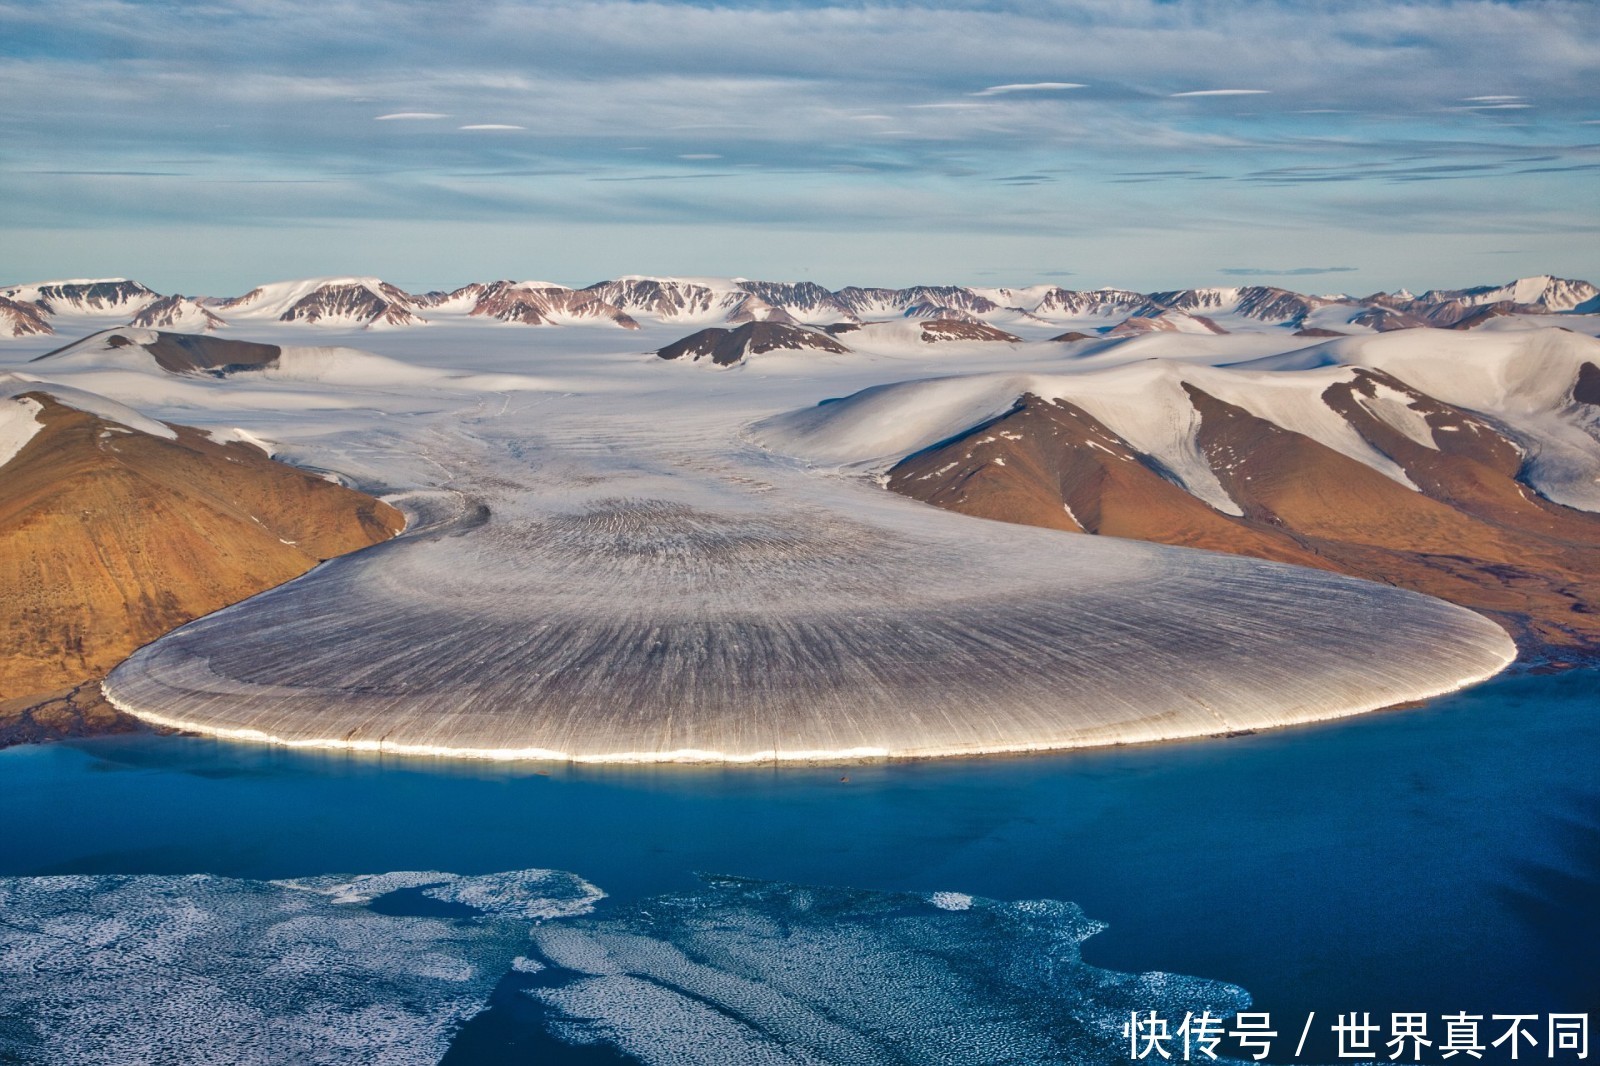 从格陵兰岛到阿拉斯加,十六张照片诠释了冰川